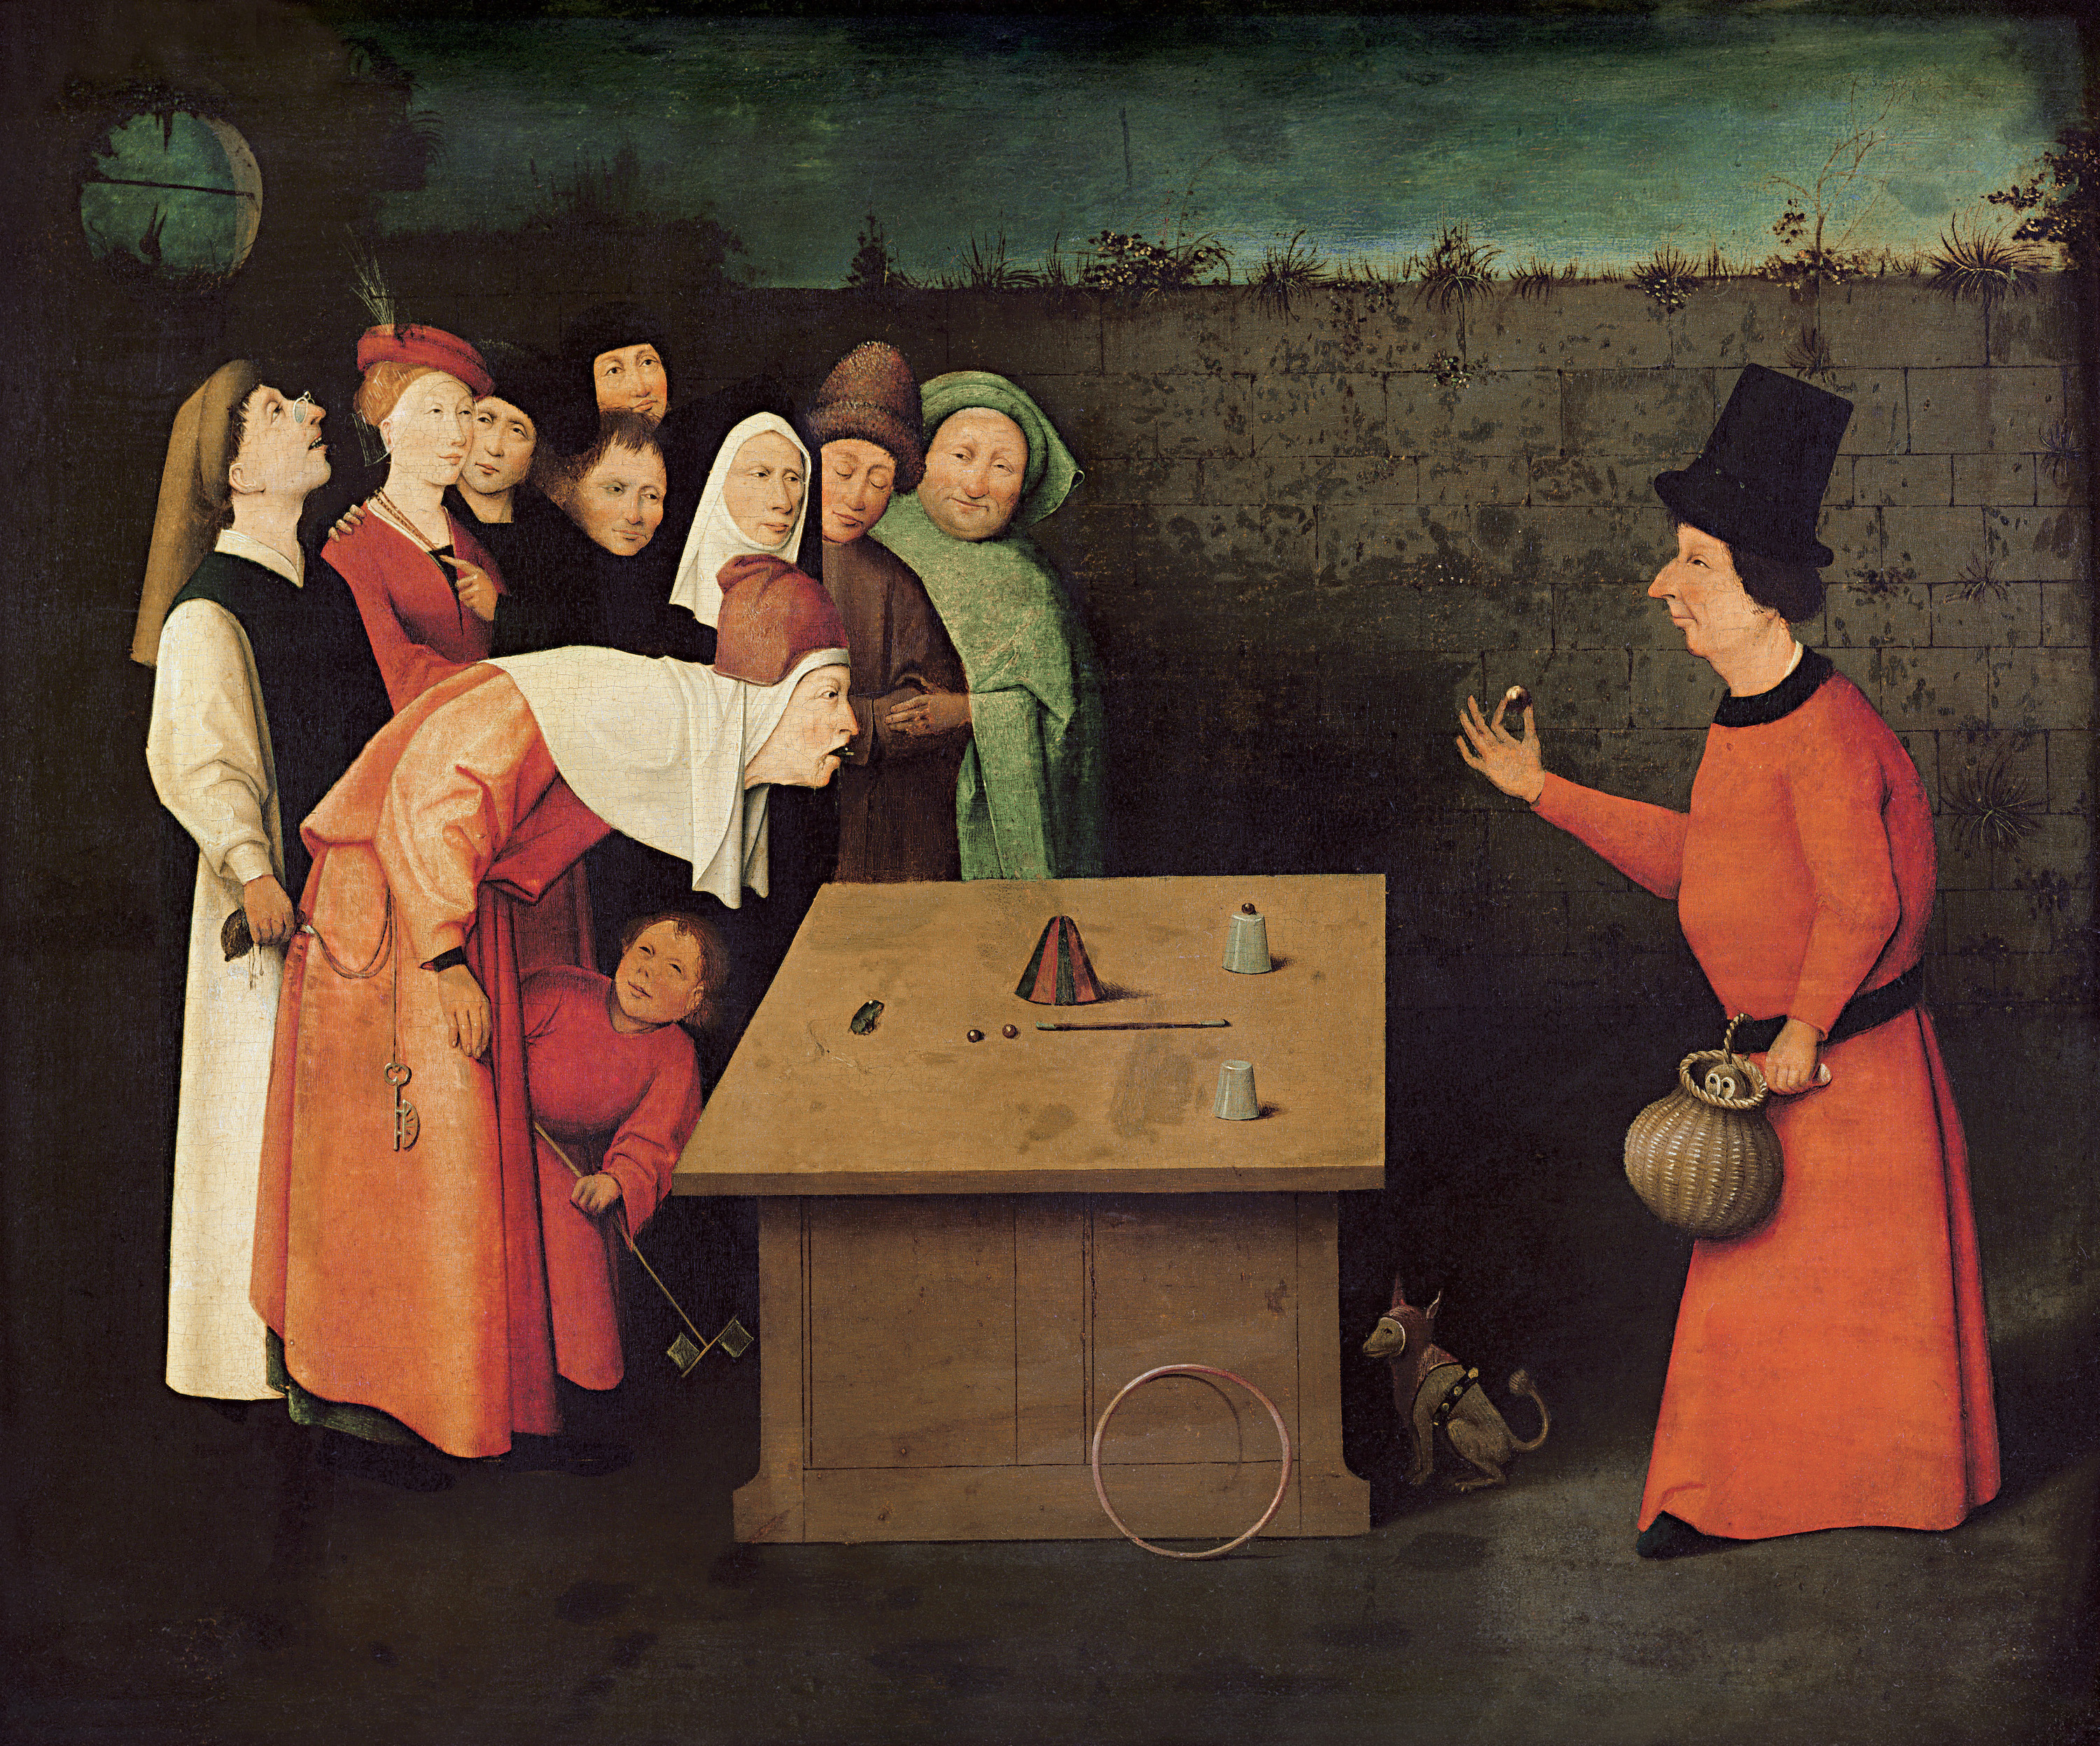 Фокусник by Hieronymus Bosch - між 1496 і 1516 роками - 53 x 65 см 